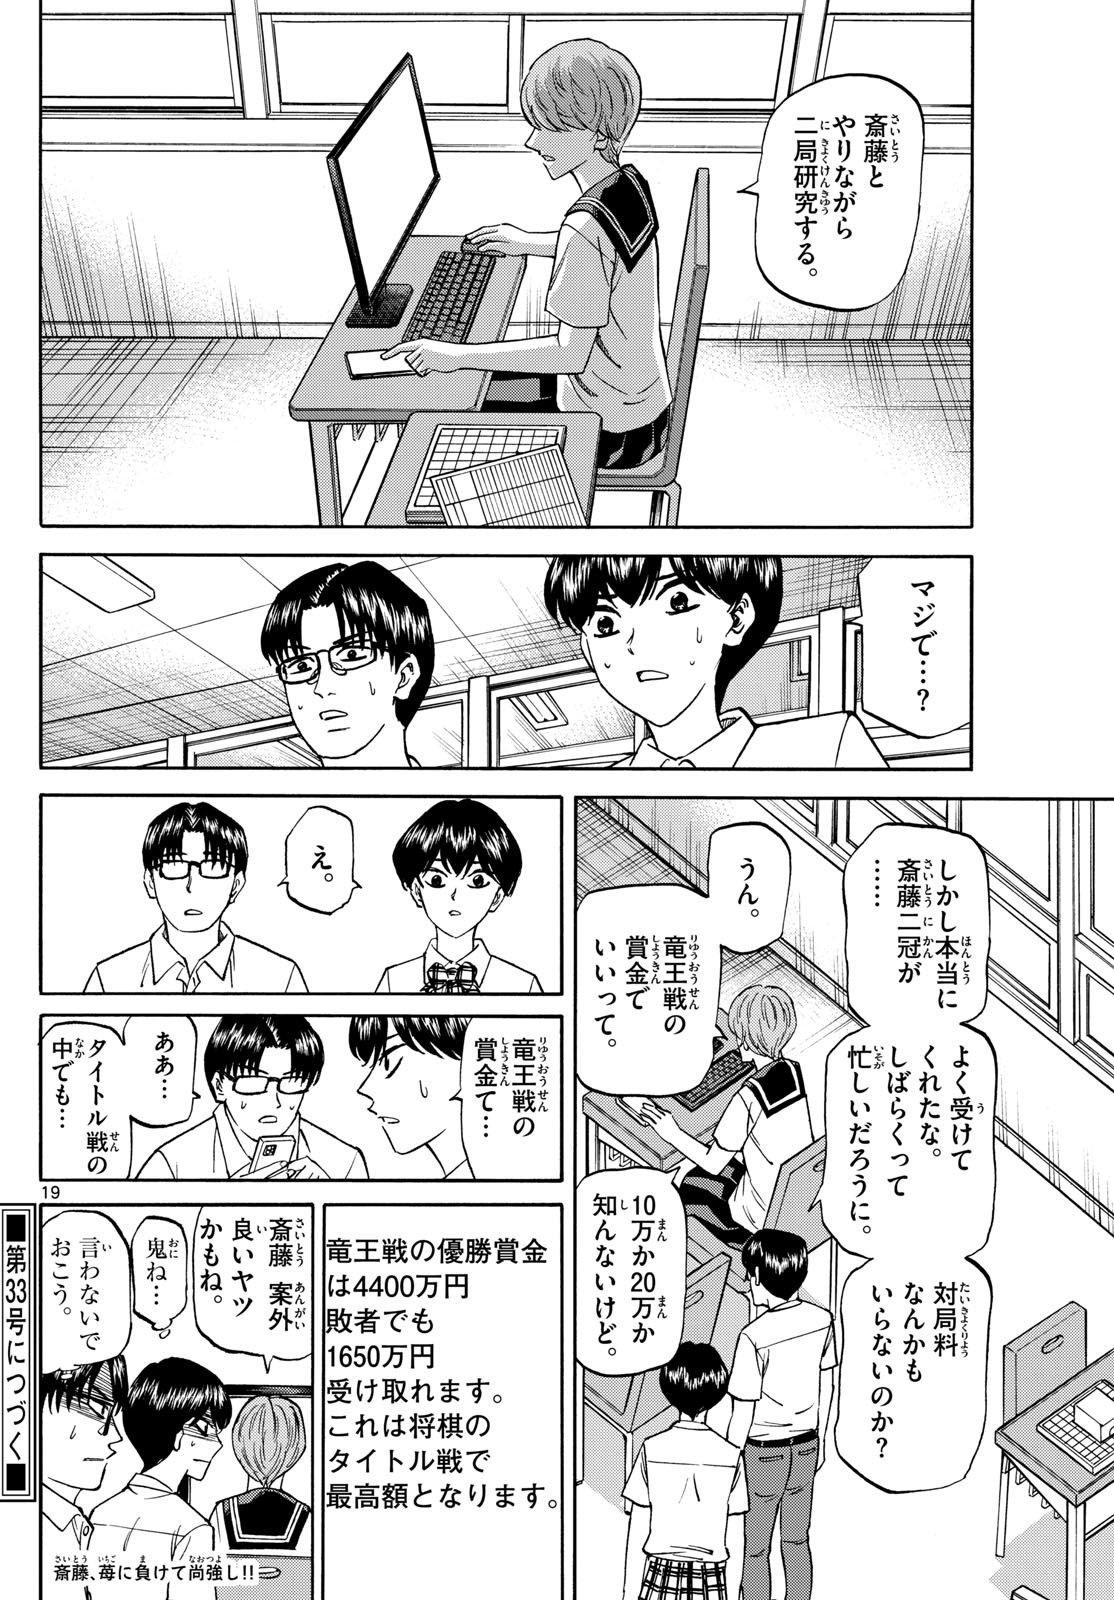 Ryu-to-Ichigo - Chapter 150 - Page 19